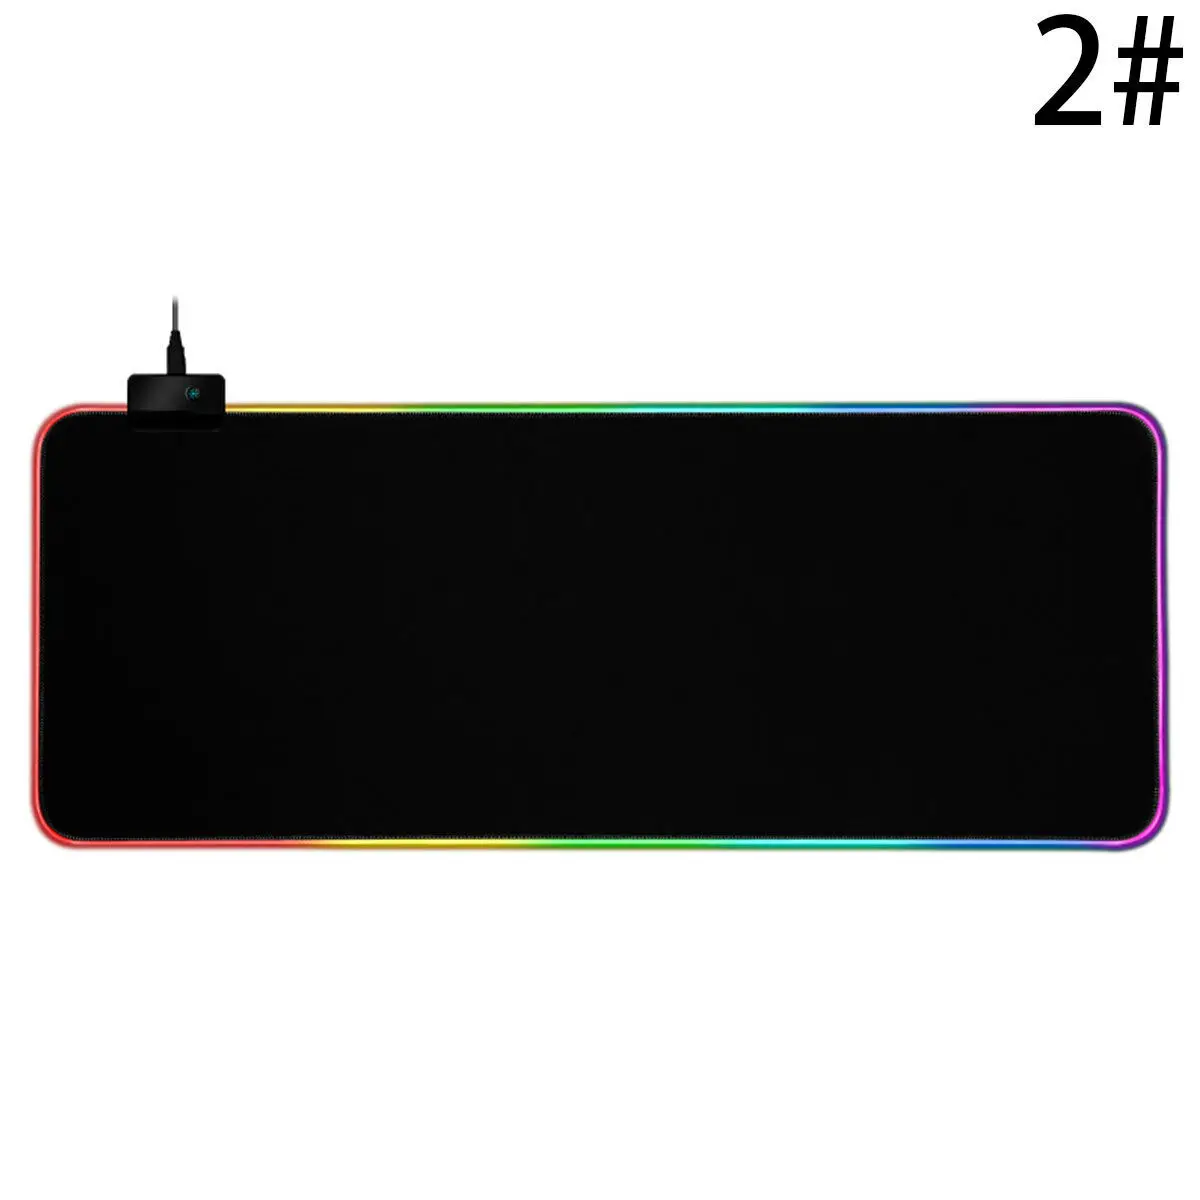 Супер креативный RGB большой освещенный игровой коврик для мыши удобный натуральный резиновый подсвечиваемый нескользящий Настольный коврик - Цвет: 800mm X 300mm